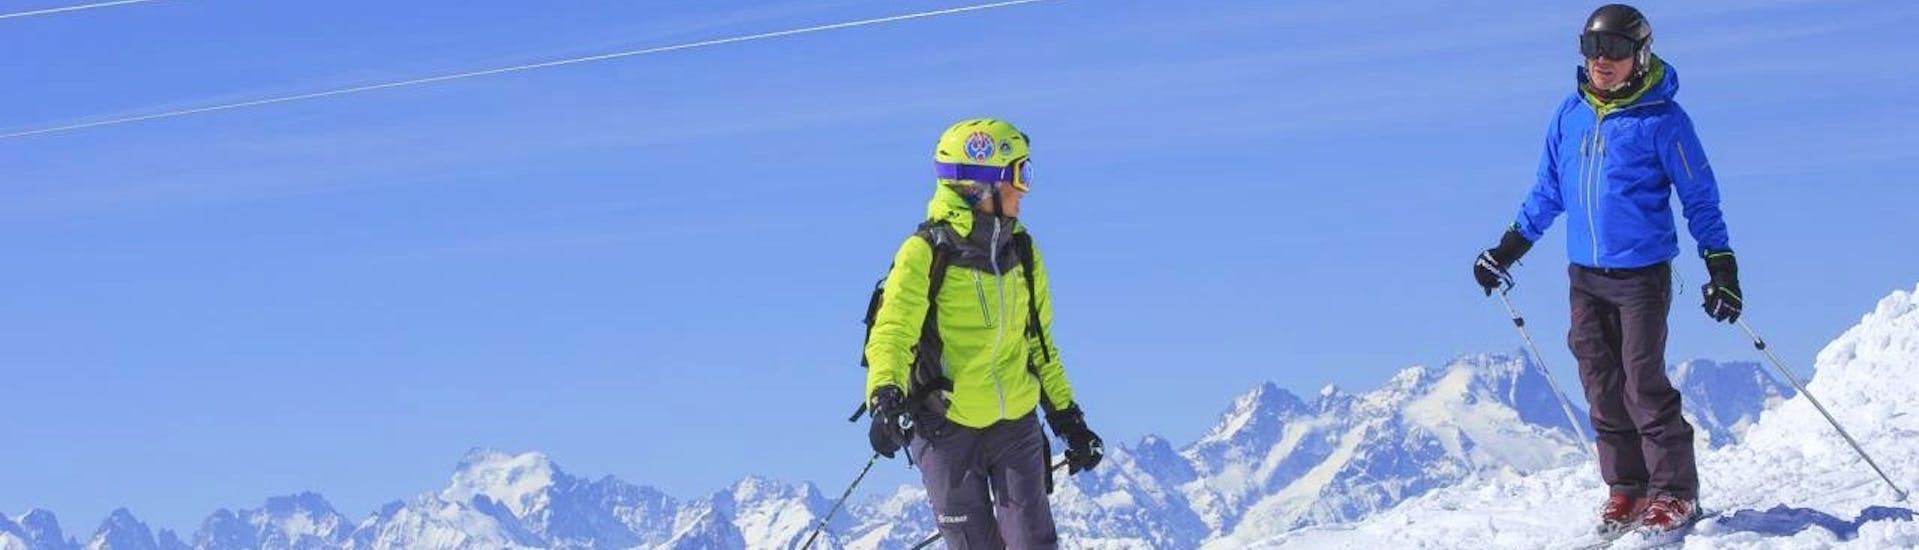 Privater Ski-Kurs für Erwachsene für alle Levels.